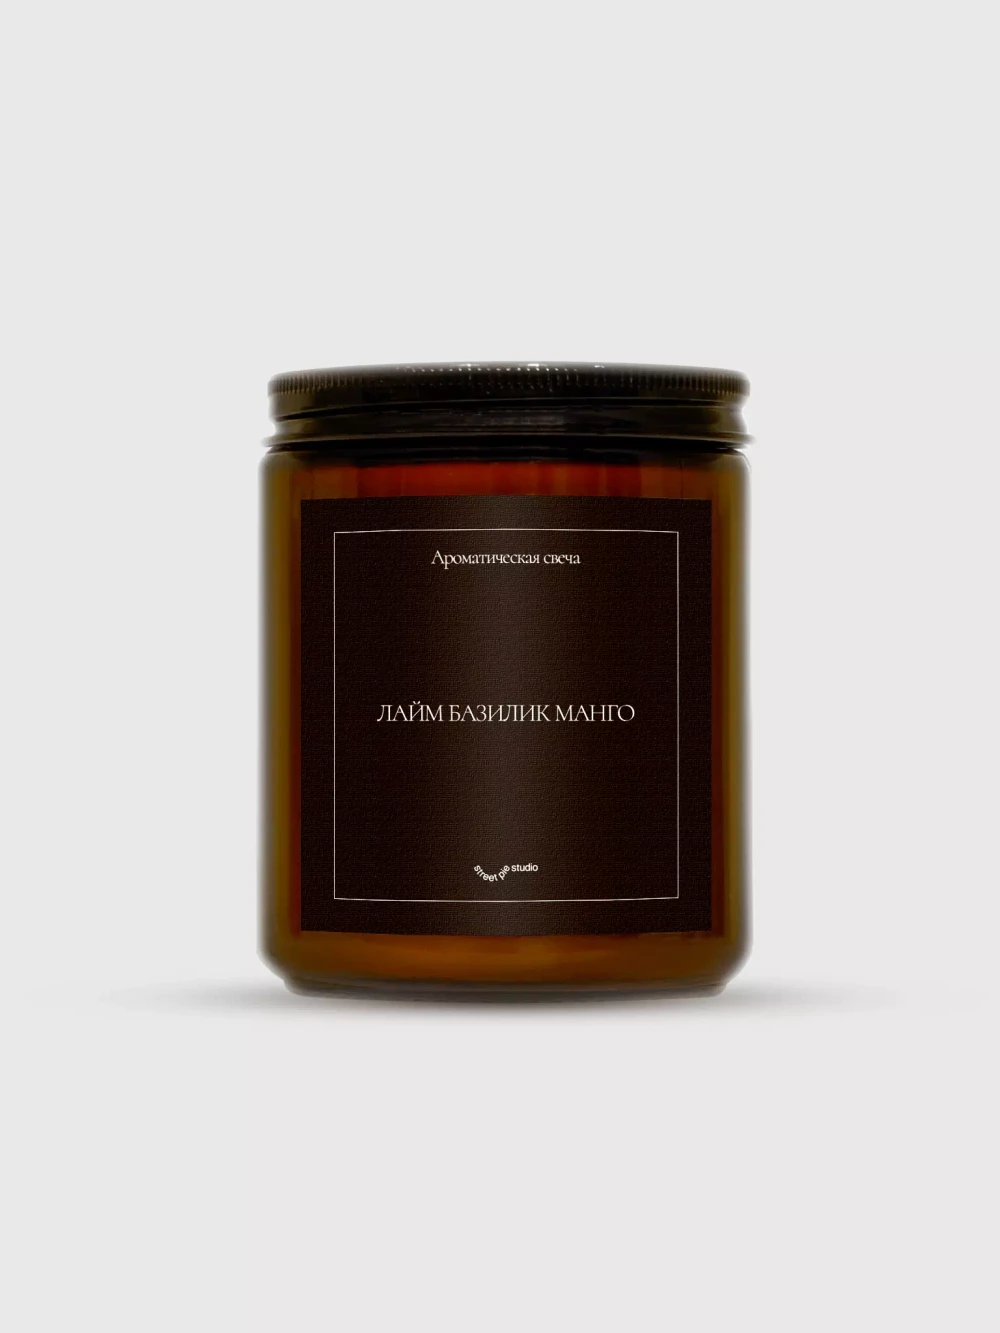 Ароматическая свеча Лайм, базилик, манго